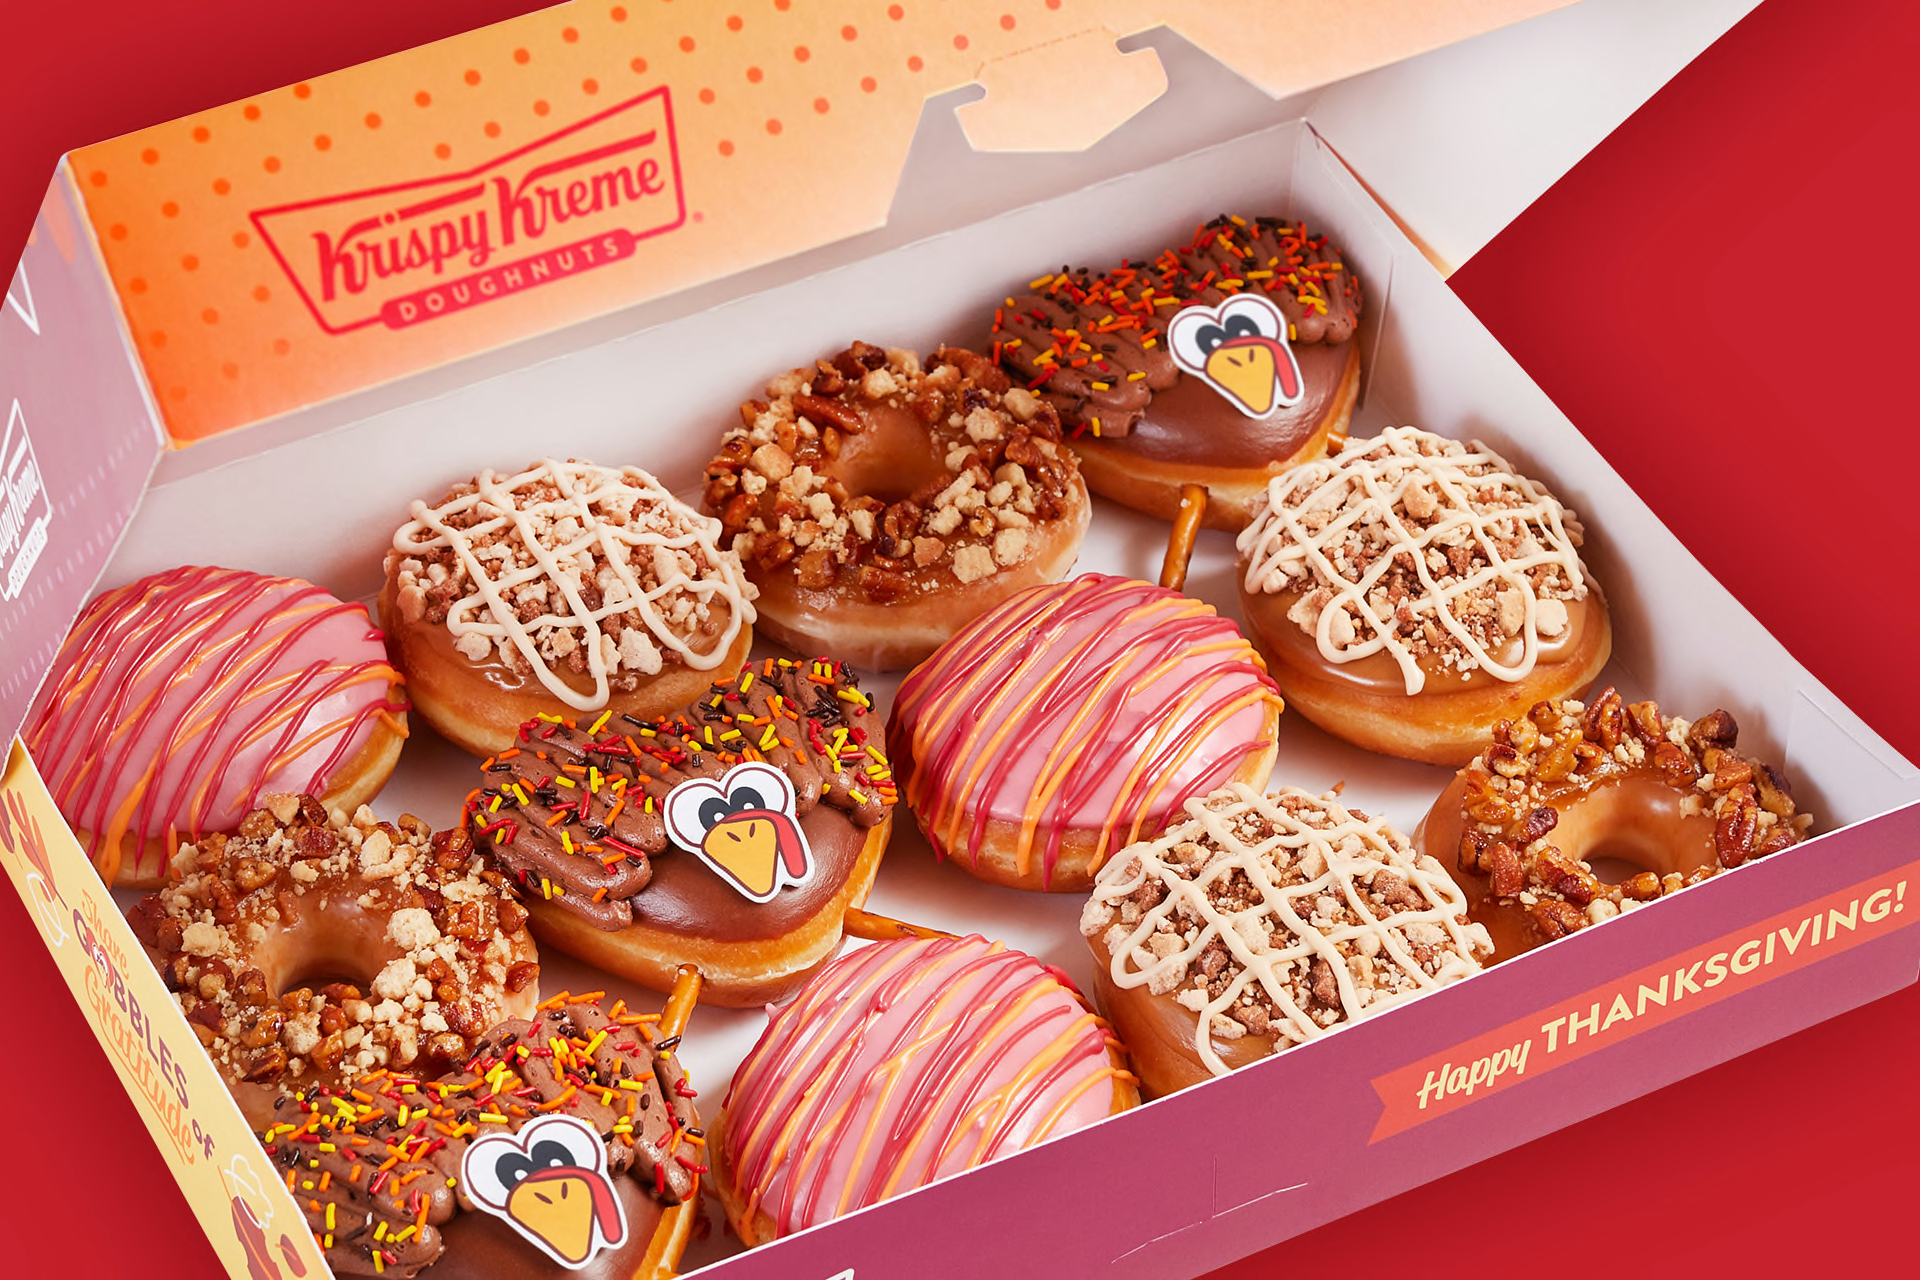 Krispy Kreme Gobble Thanksgiving doughnuts